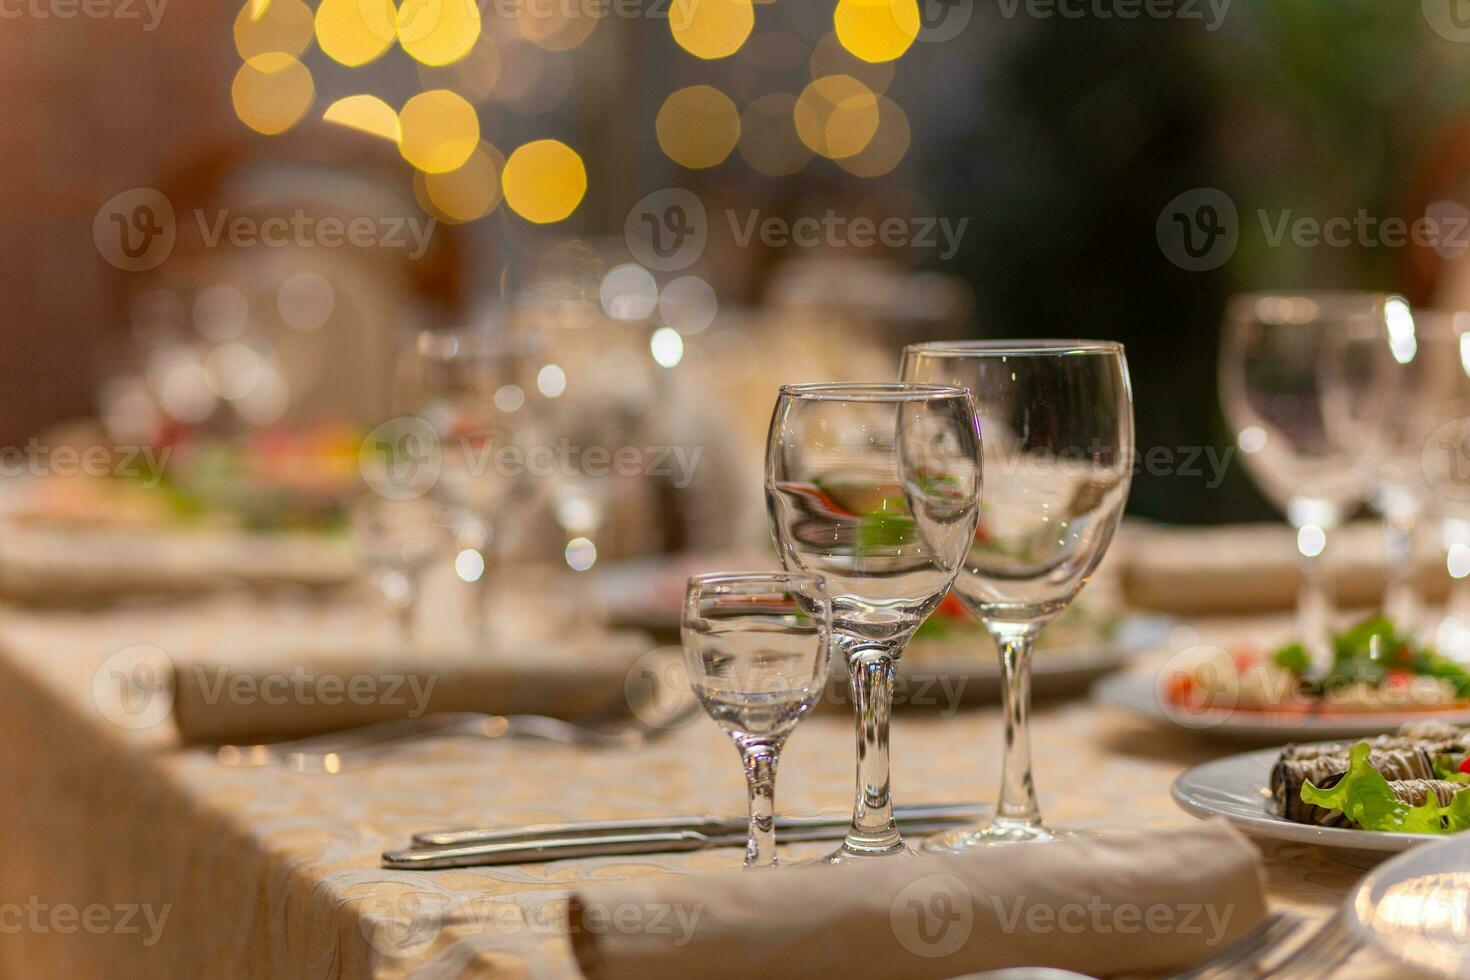 servi de fête table avec collations, lunettes, lunettes, coutellerie et serviettes pour une banquet photo